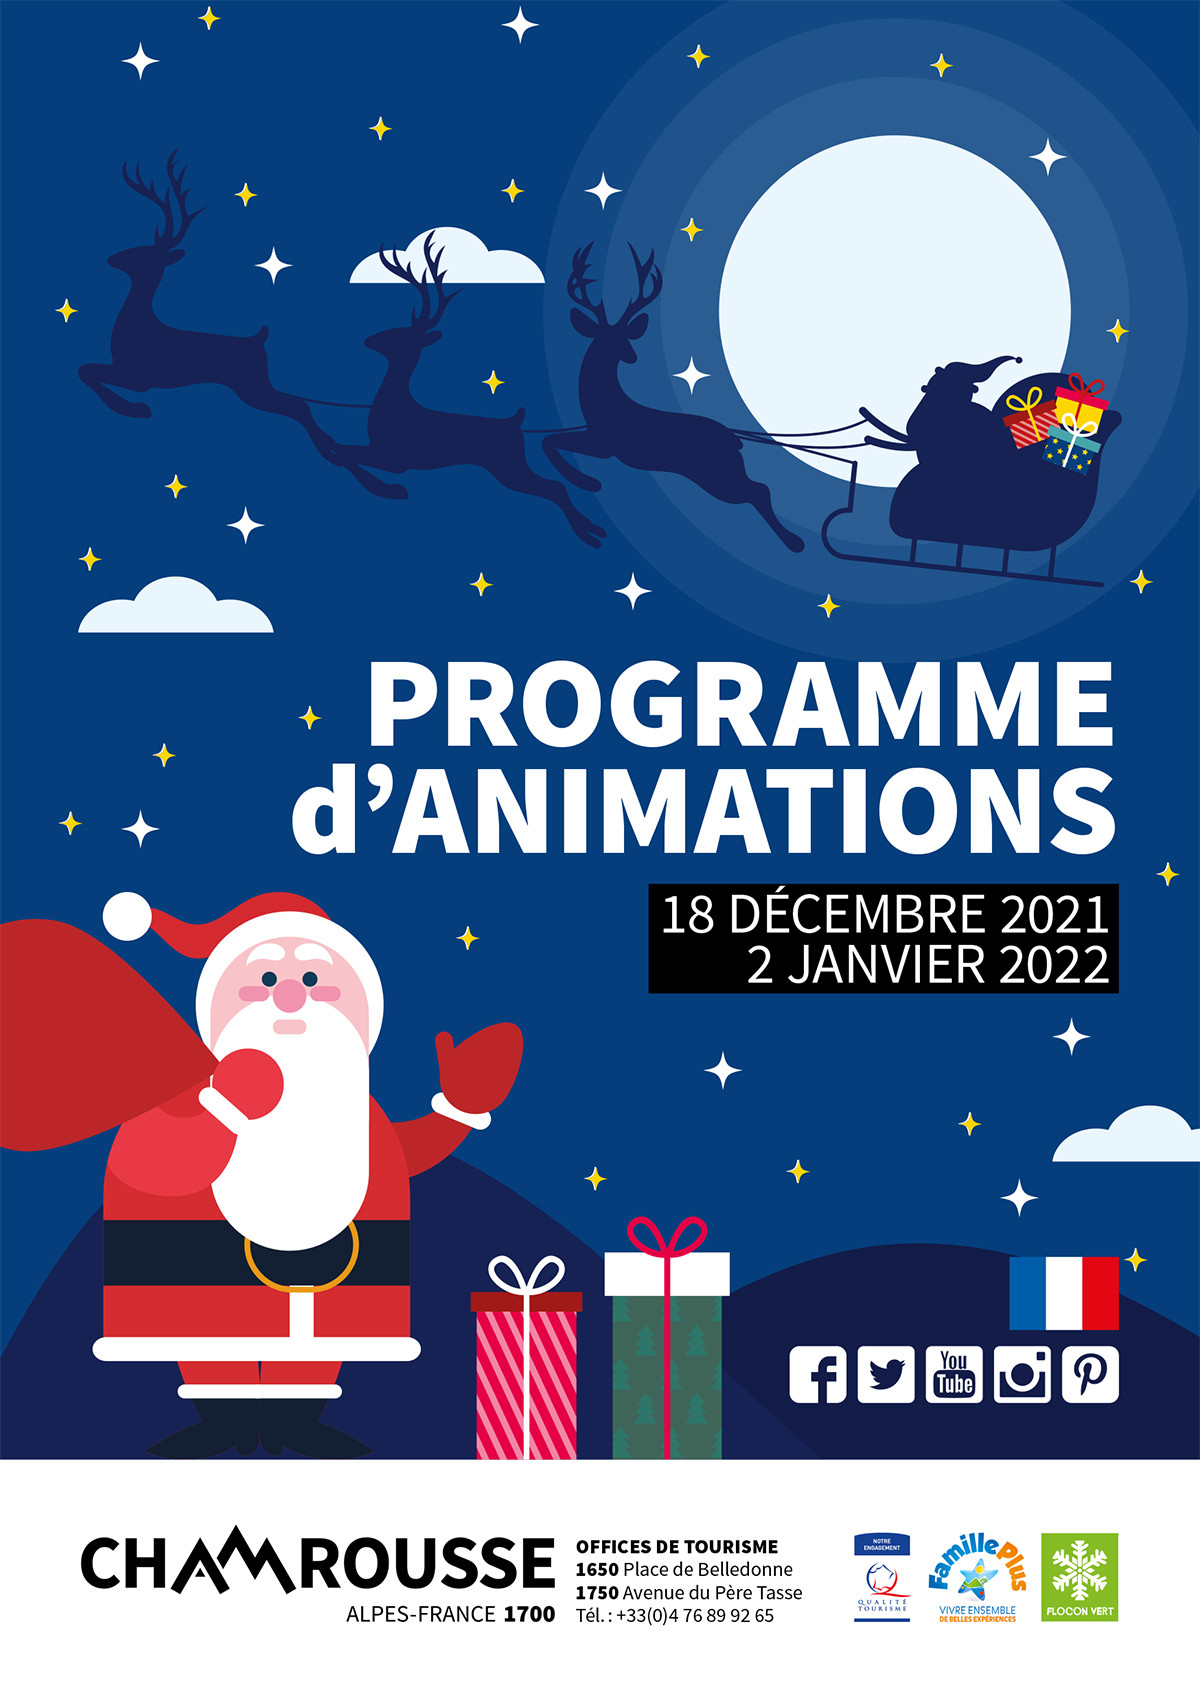 Chamrousse programme animation événement vacances noël décembre 2021 station ski montagne isère alpes france